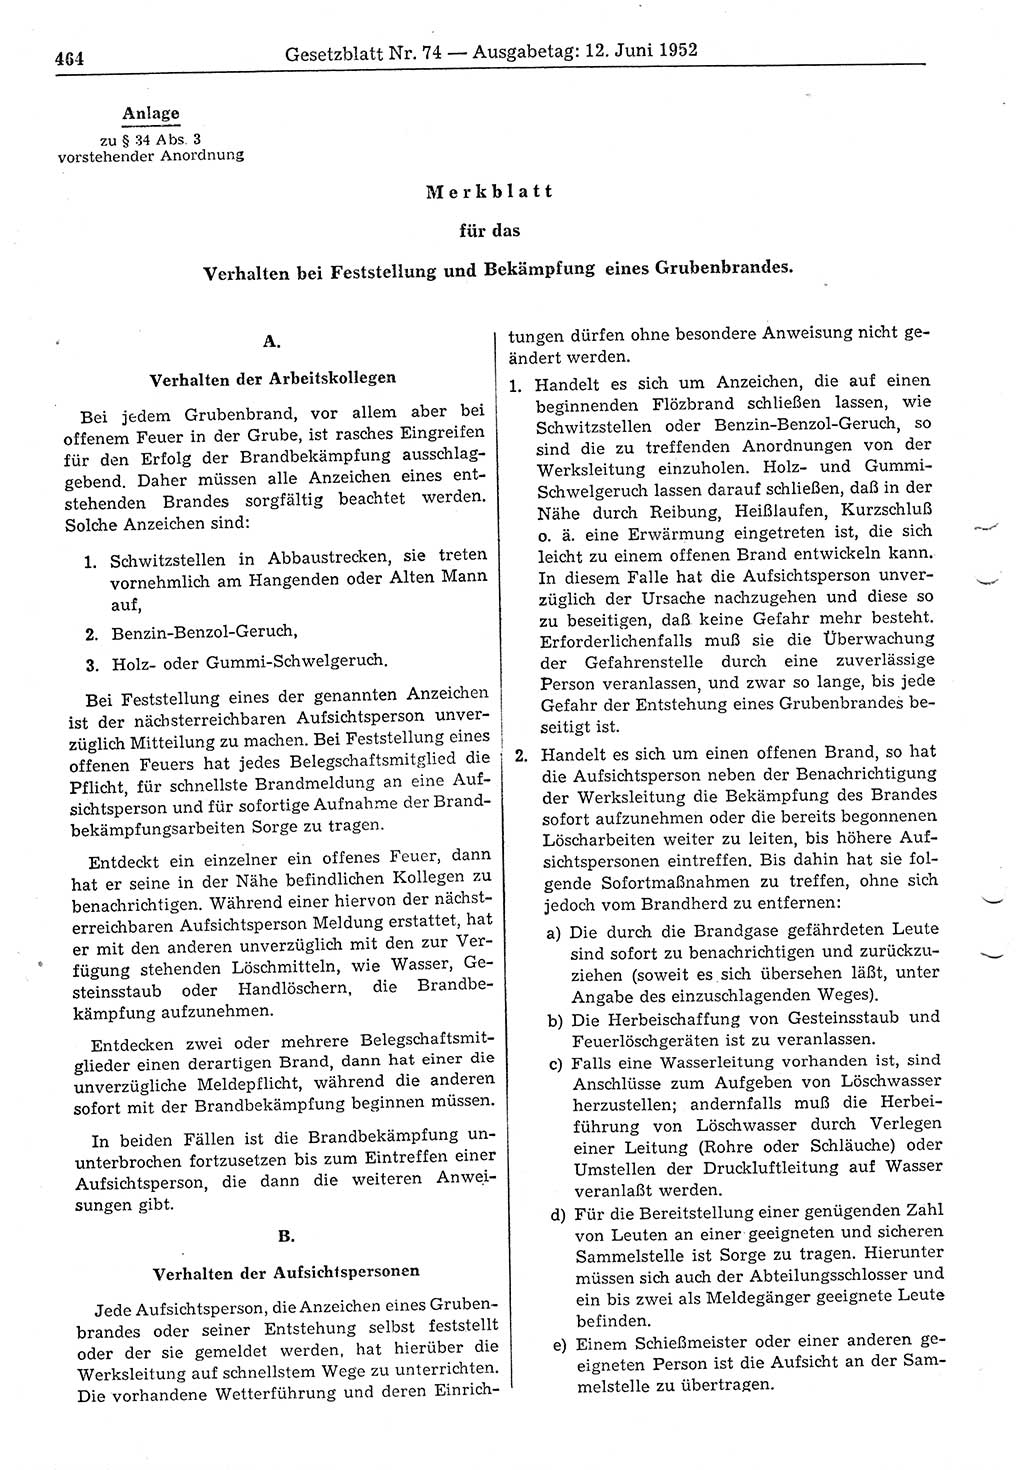 Gesetzblatt (GBl.) der Deutschen Demokratischen Republik (DDR) 1952, Seite 464 (GBl. DDR 1952, S. 464)